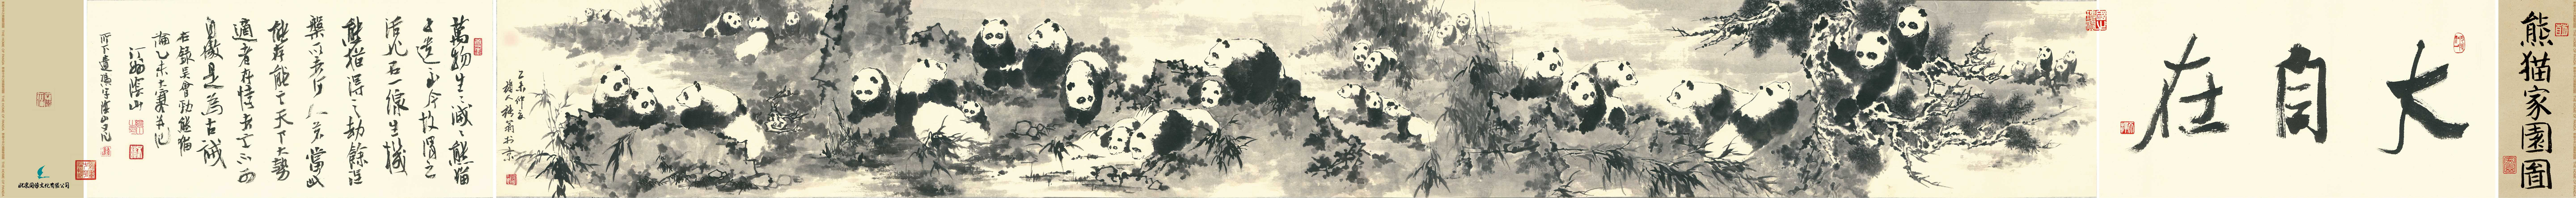 熊猫家园水墨画